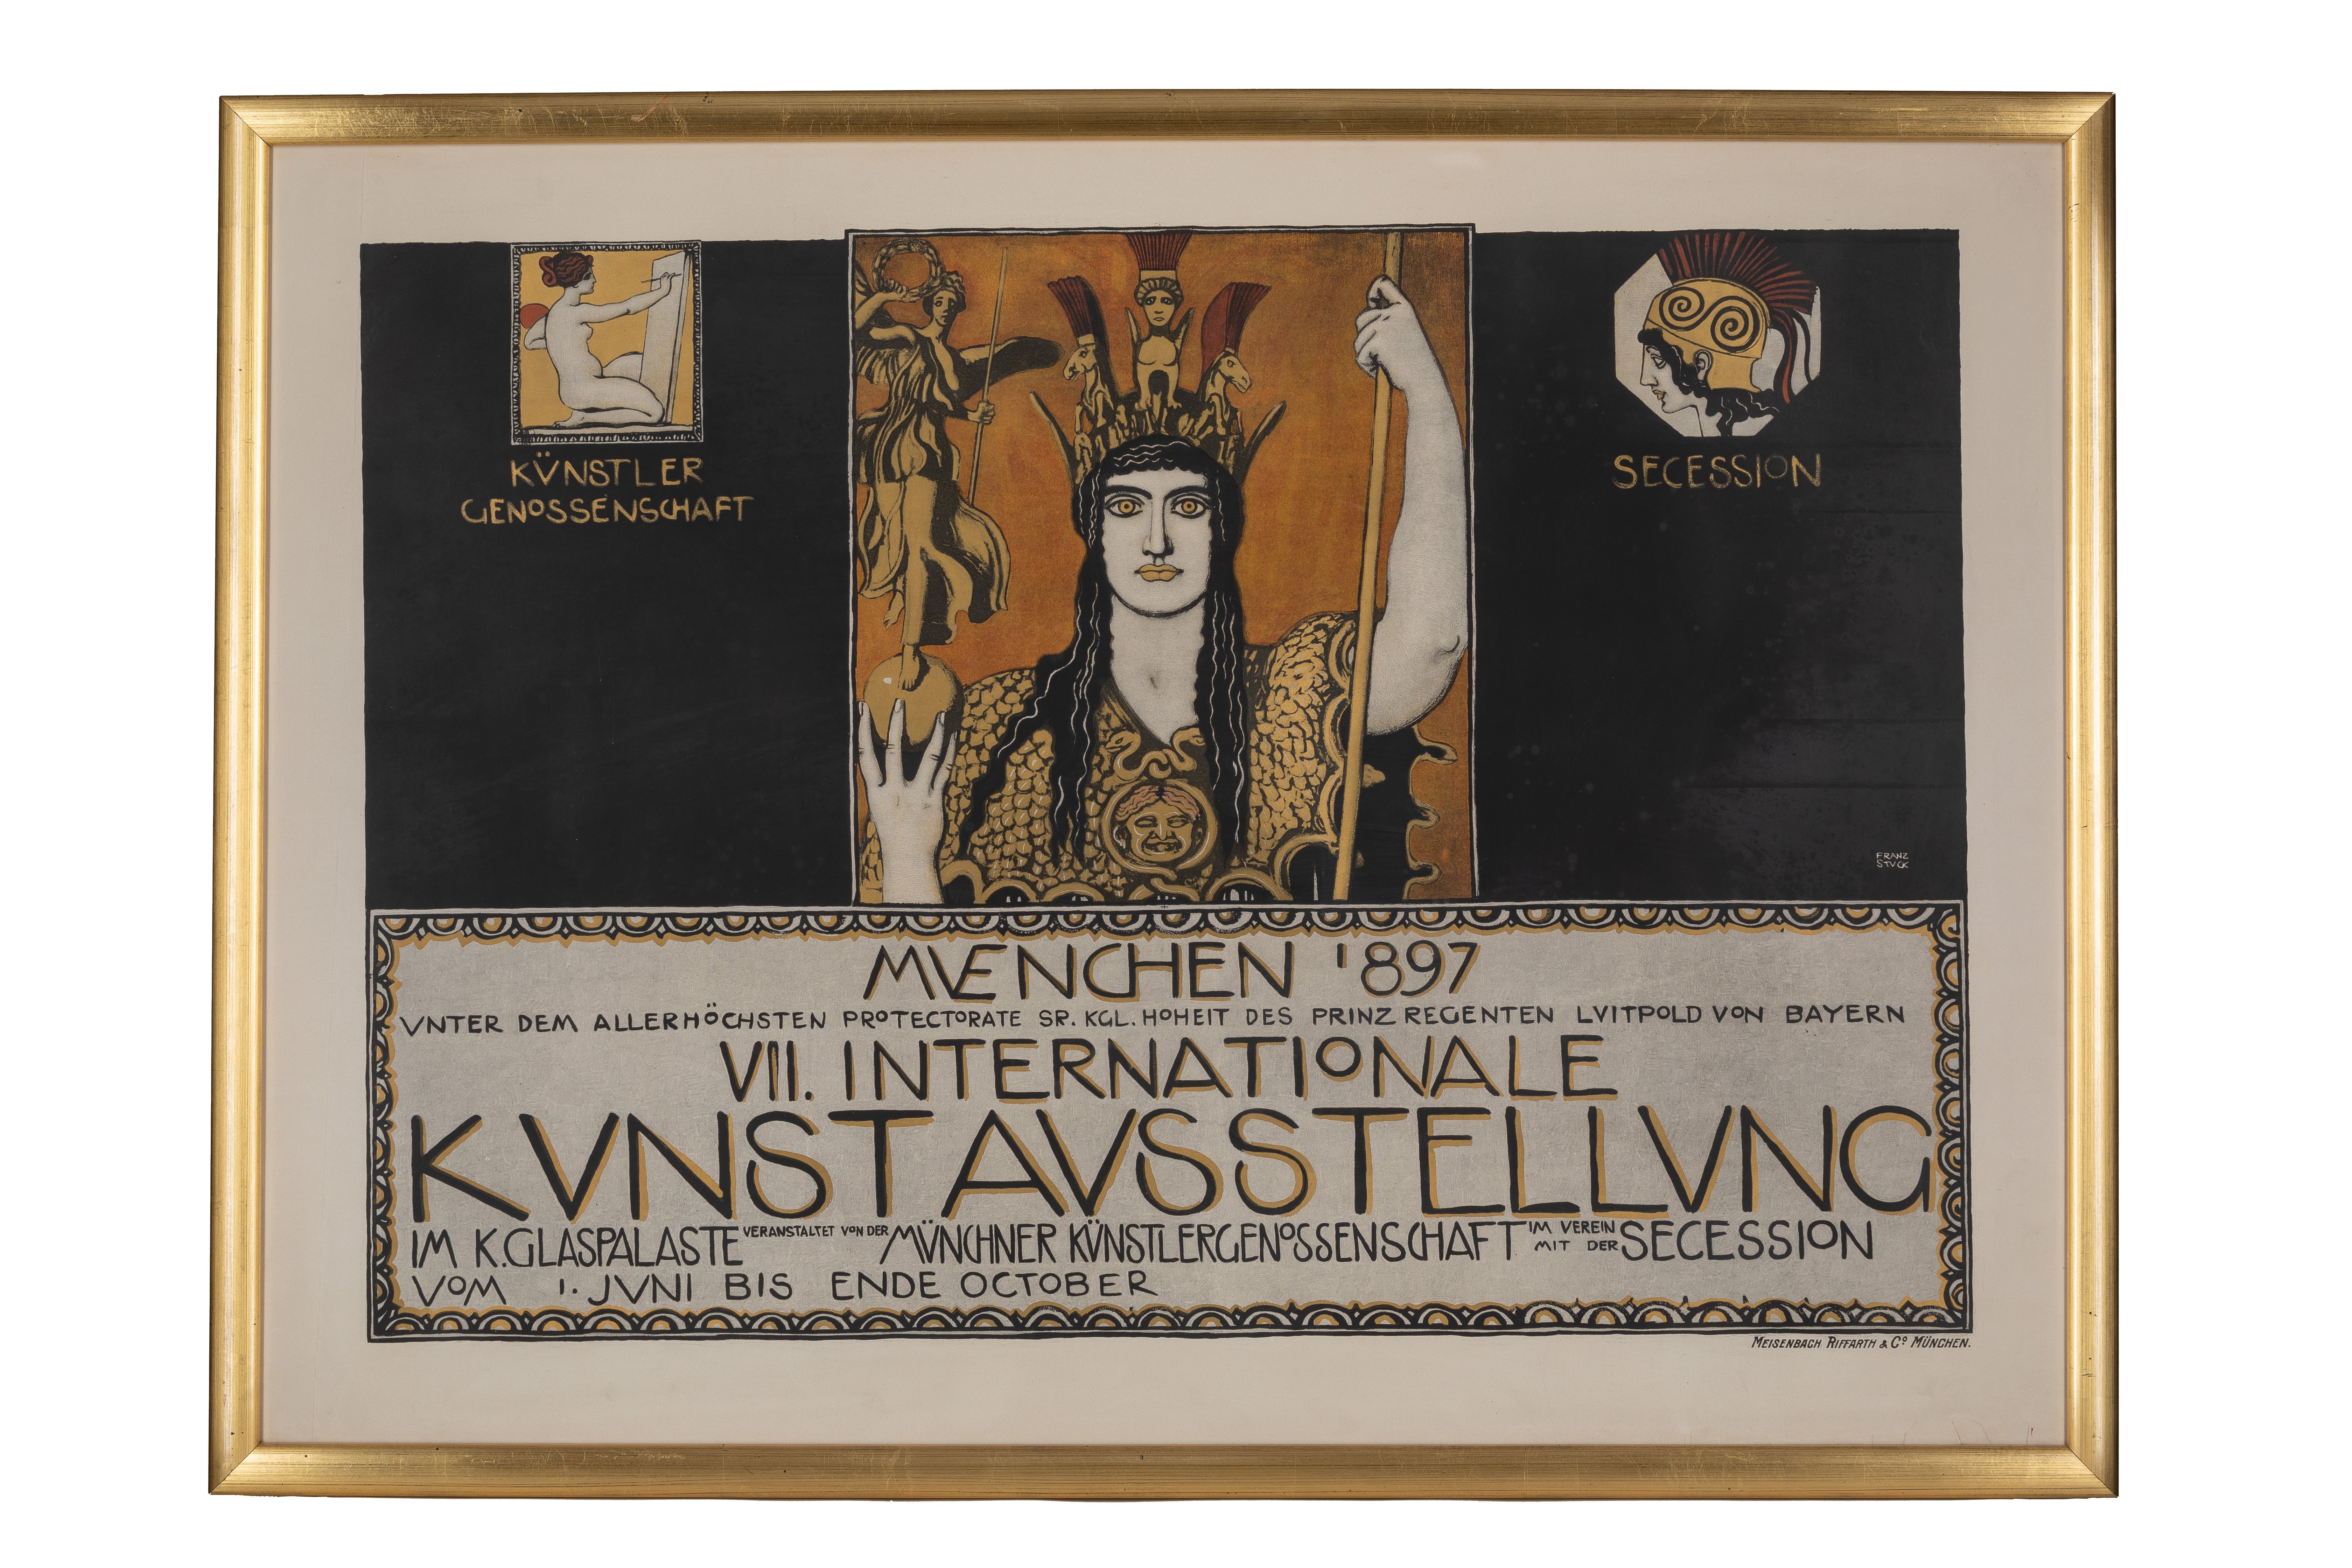 Plakat für die VII. Internationale Kunstausstellung, Glaspalast München 1897 (Sammlung Wulff Stiftung CC BY-NC-SA)